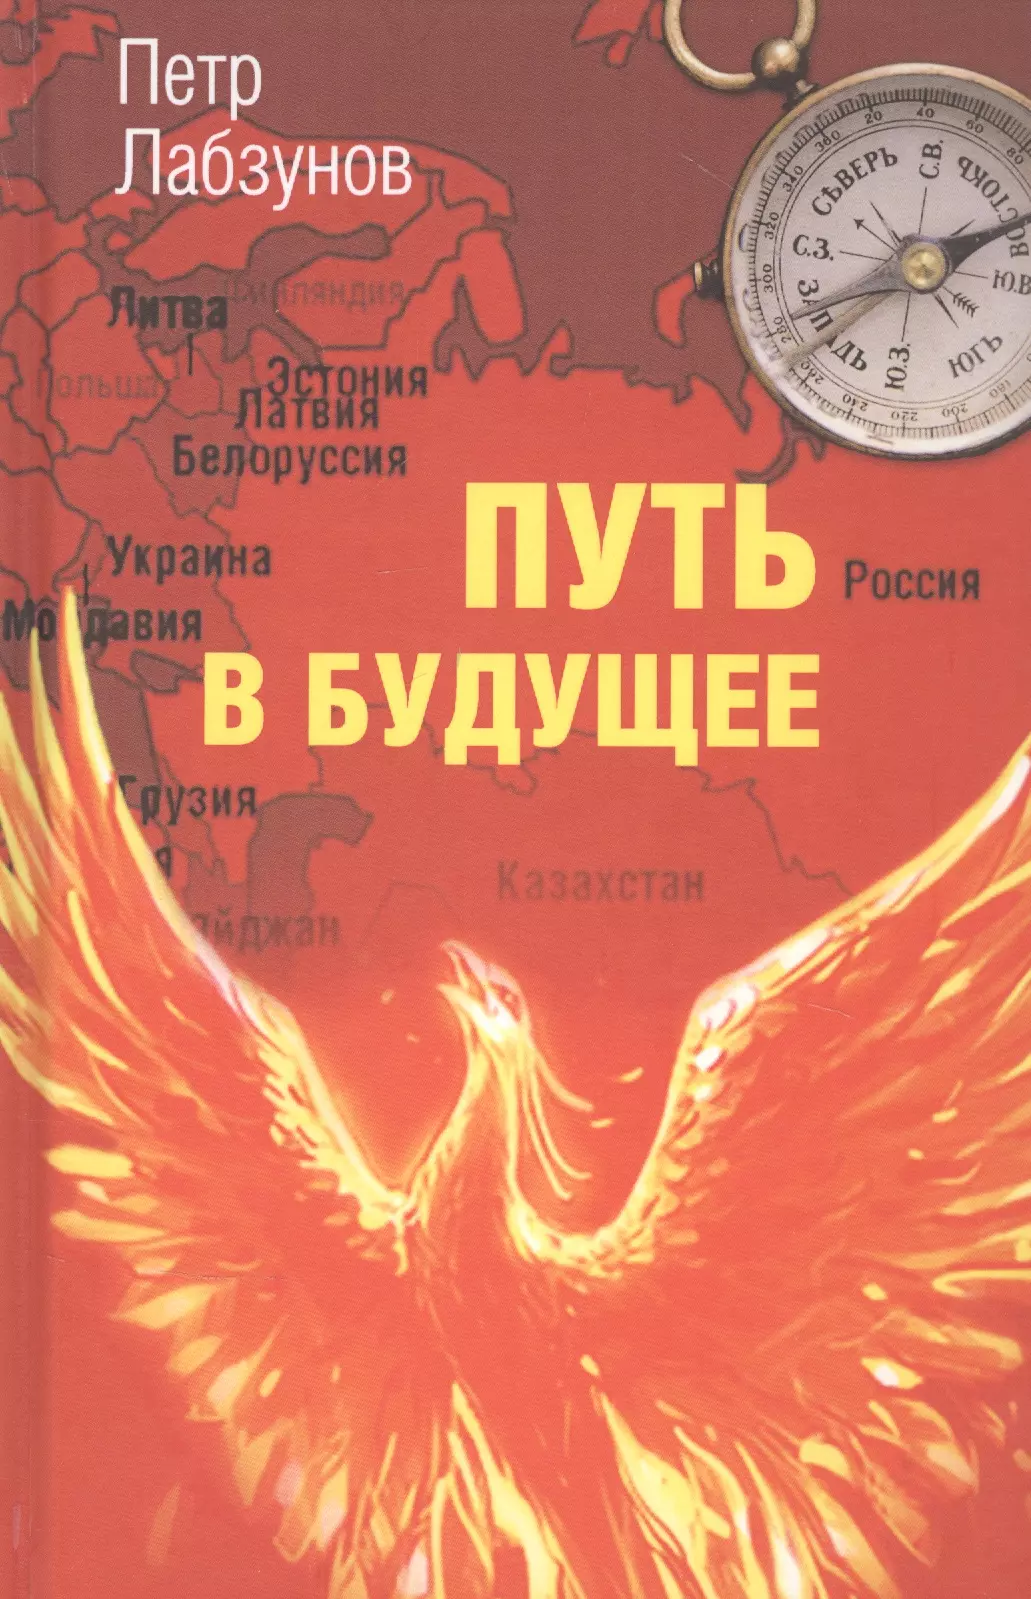 Книга будущее россии